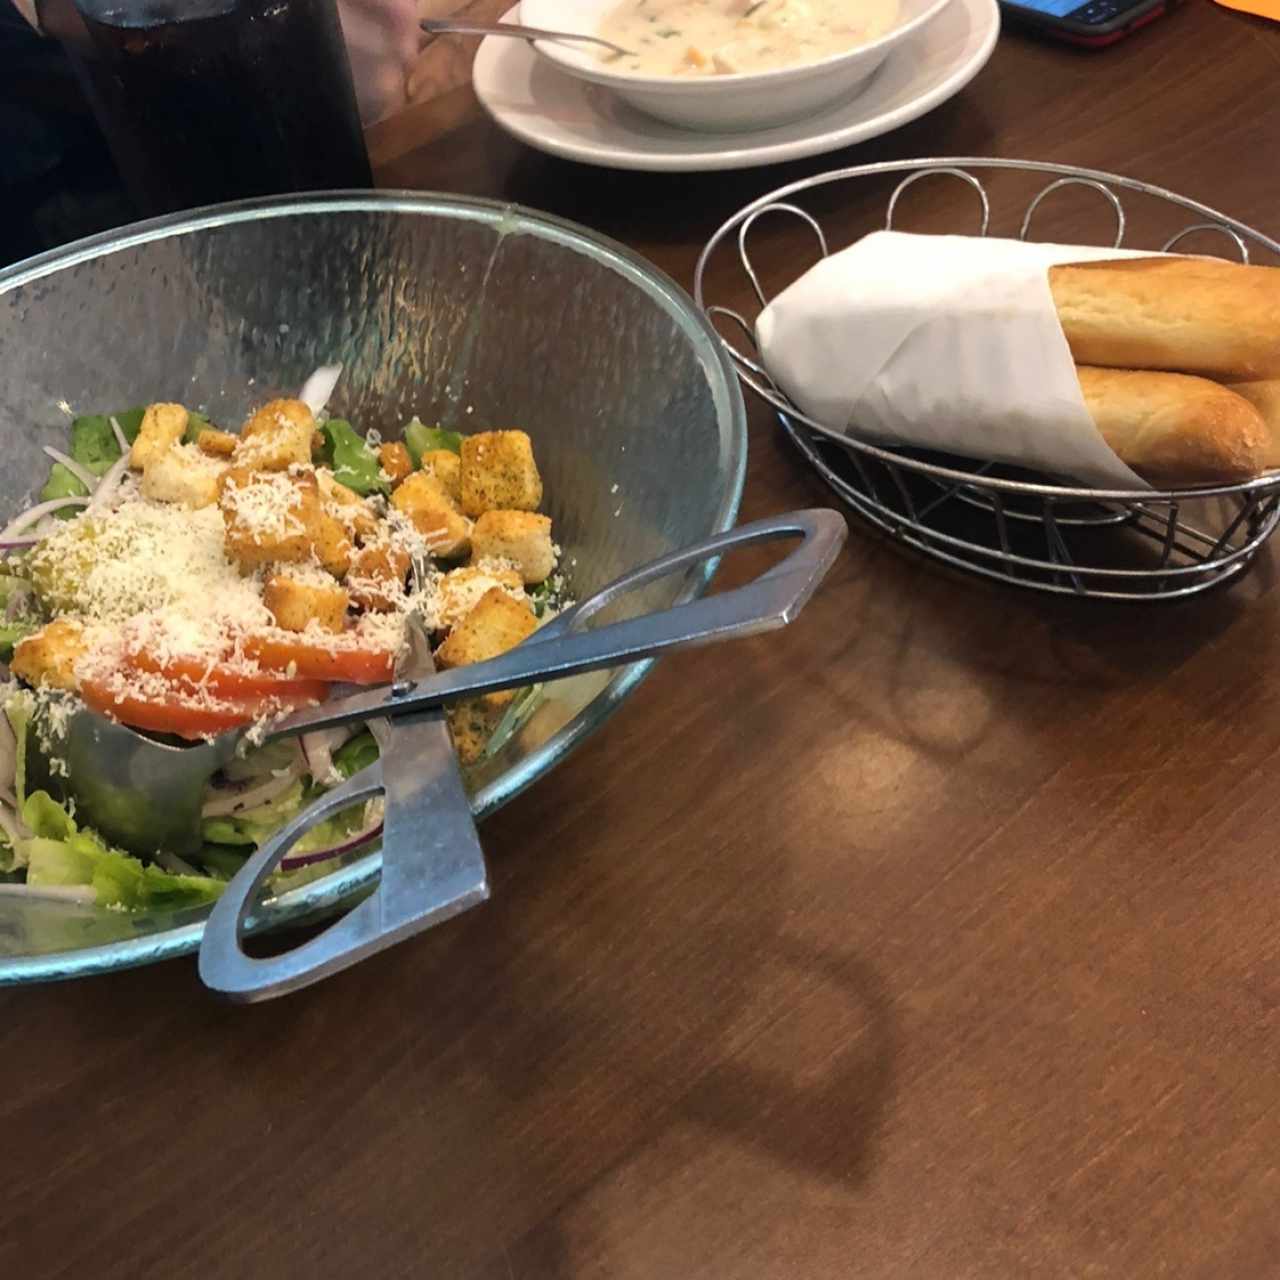 Chicken & Gnocchi, ensalada y breadsticks